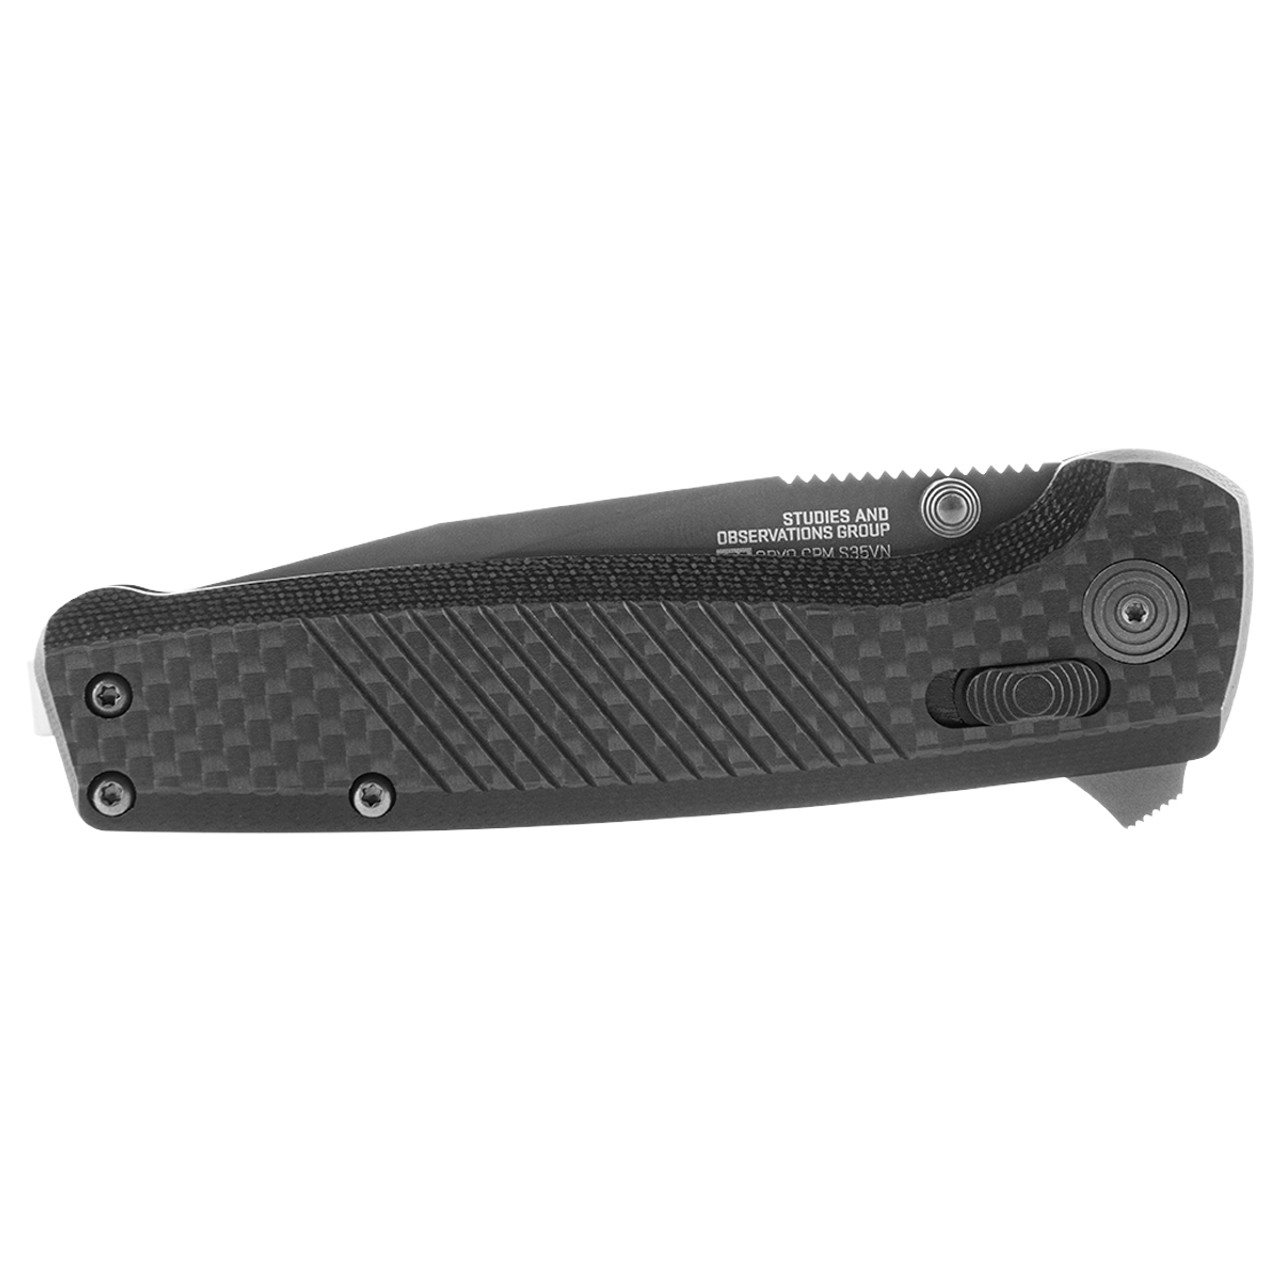 Folding Knife TERMINUS XR LTE - CARBON + GRAPHITE SOG TM1032-BX L-11